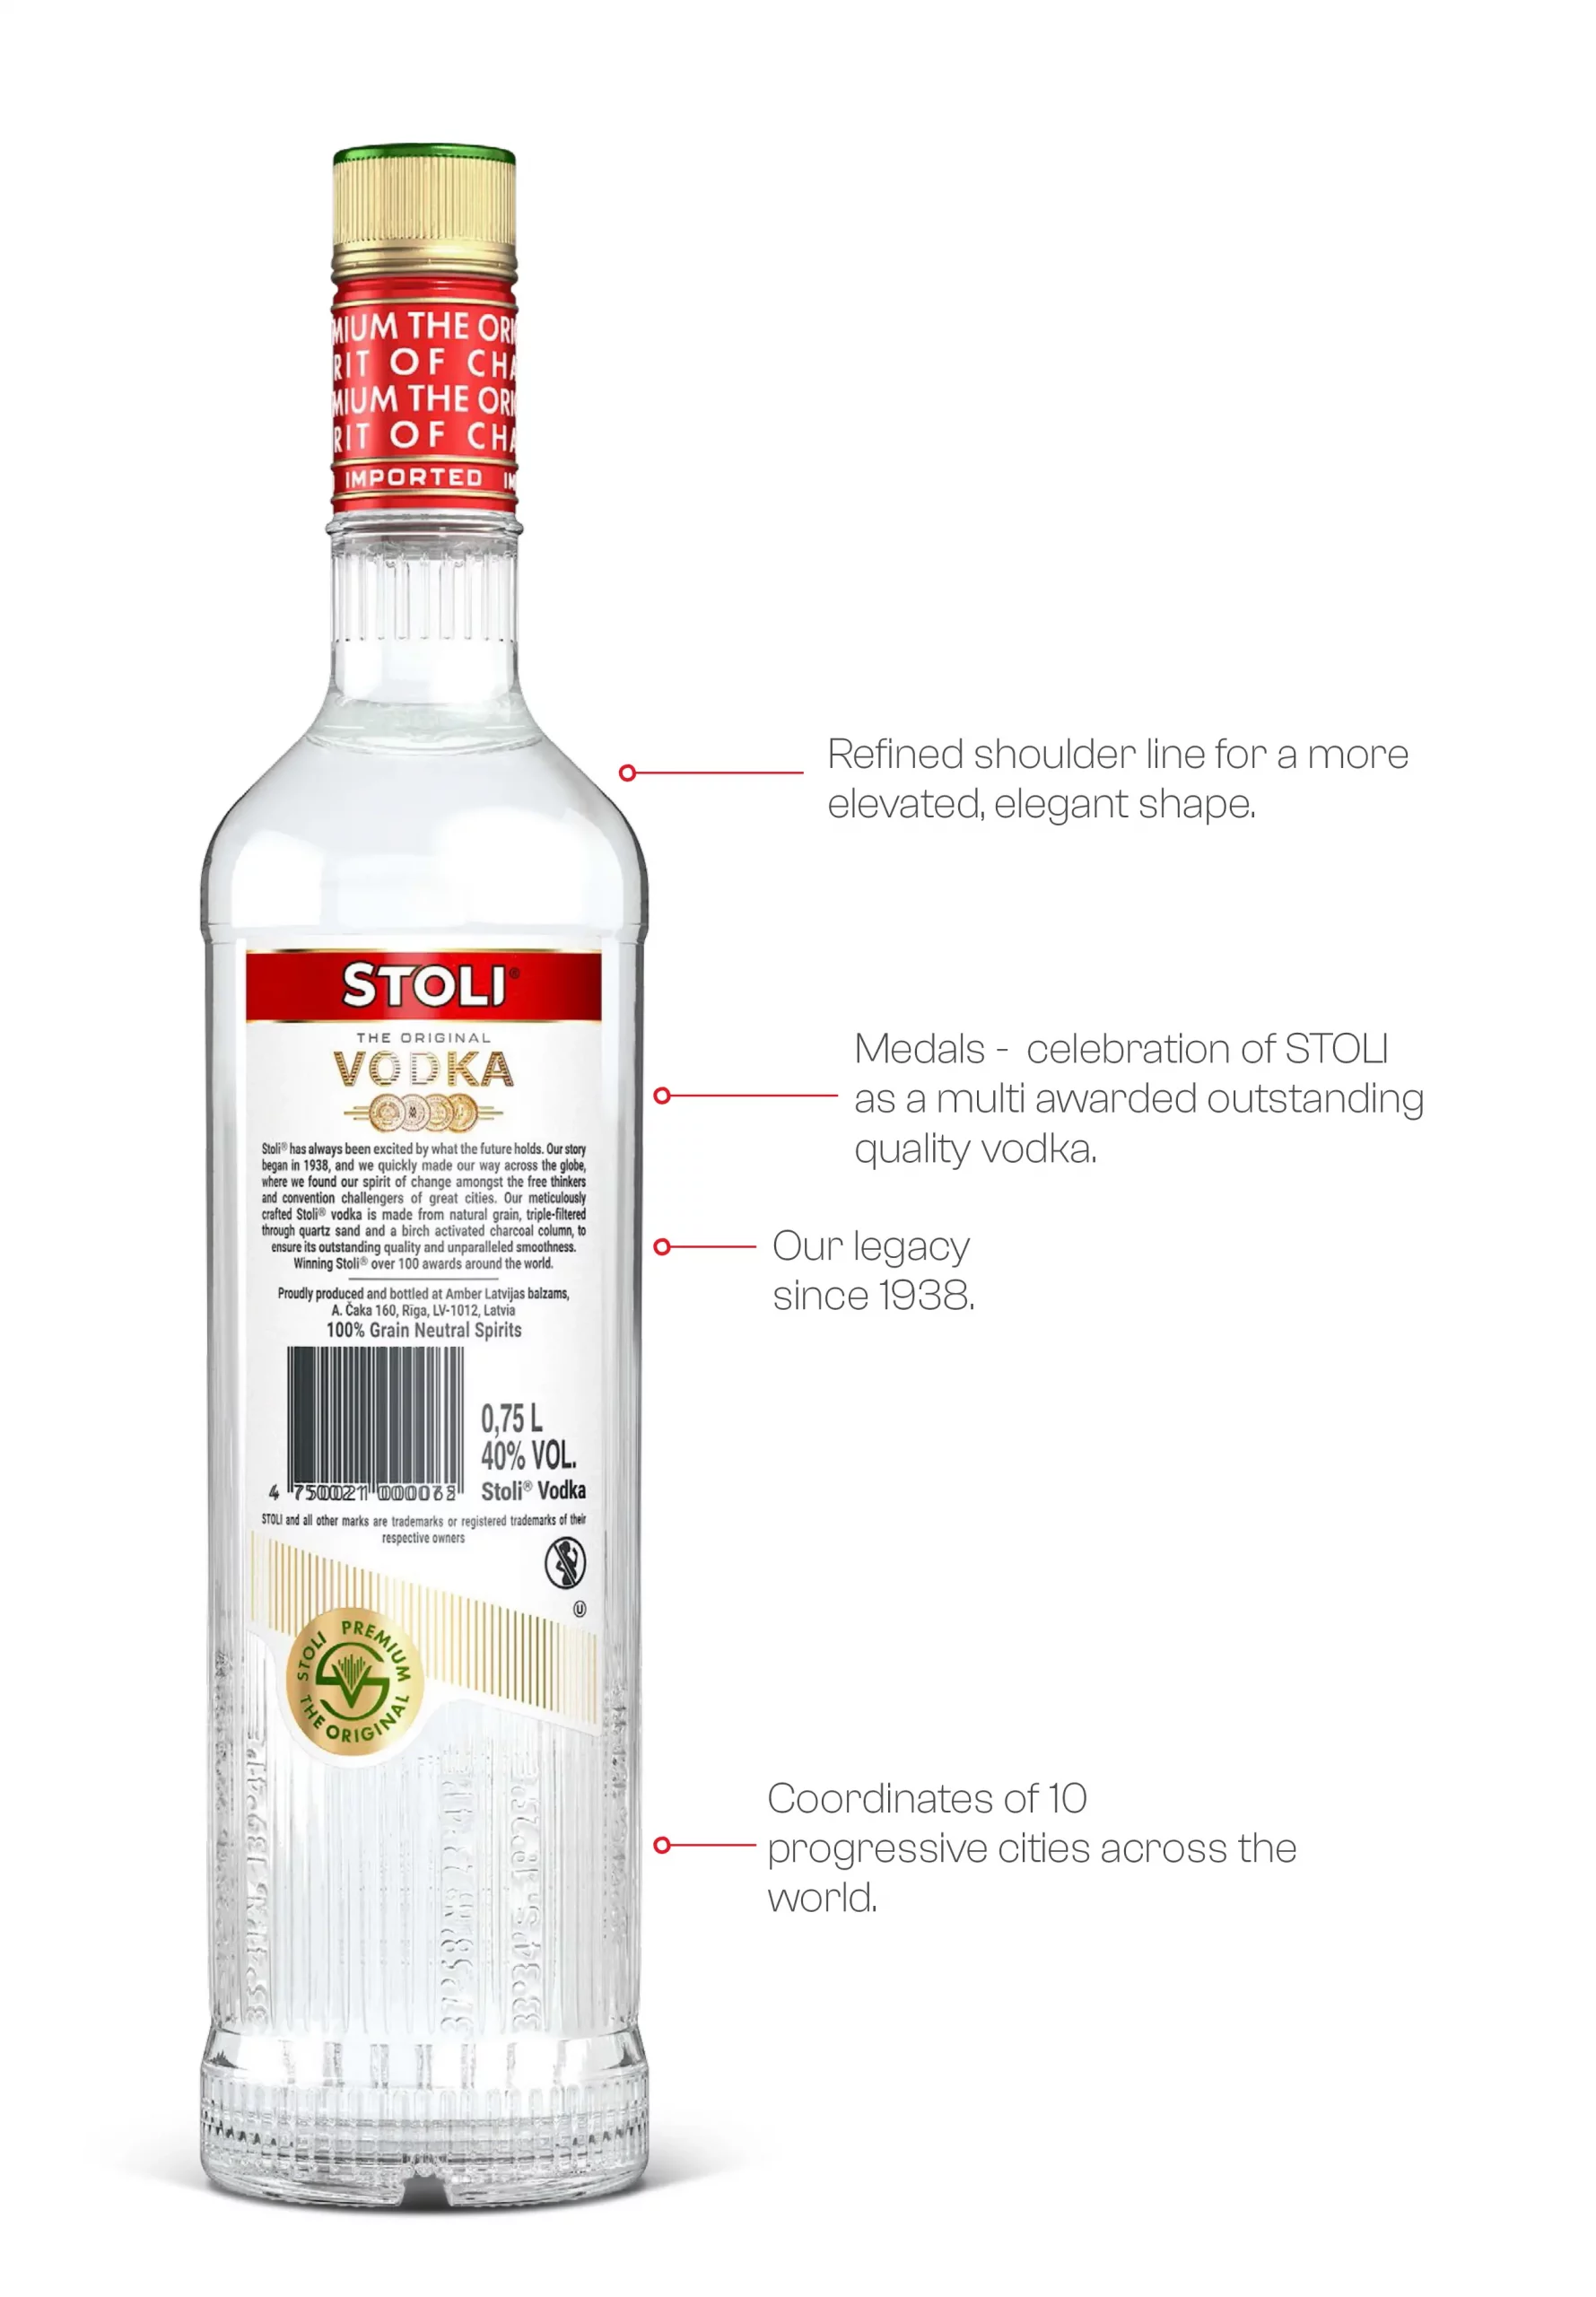 Vodka Stolichnaya Sans Gluten - Achat vodka russe - Nicolas